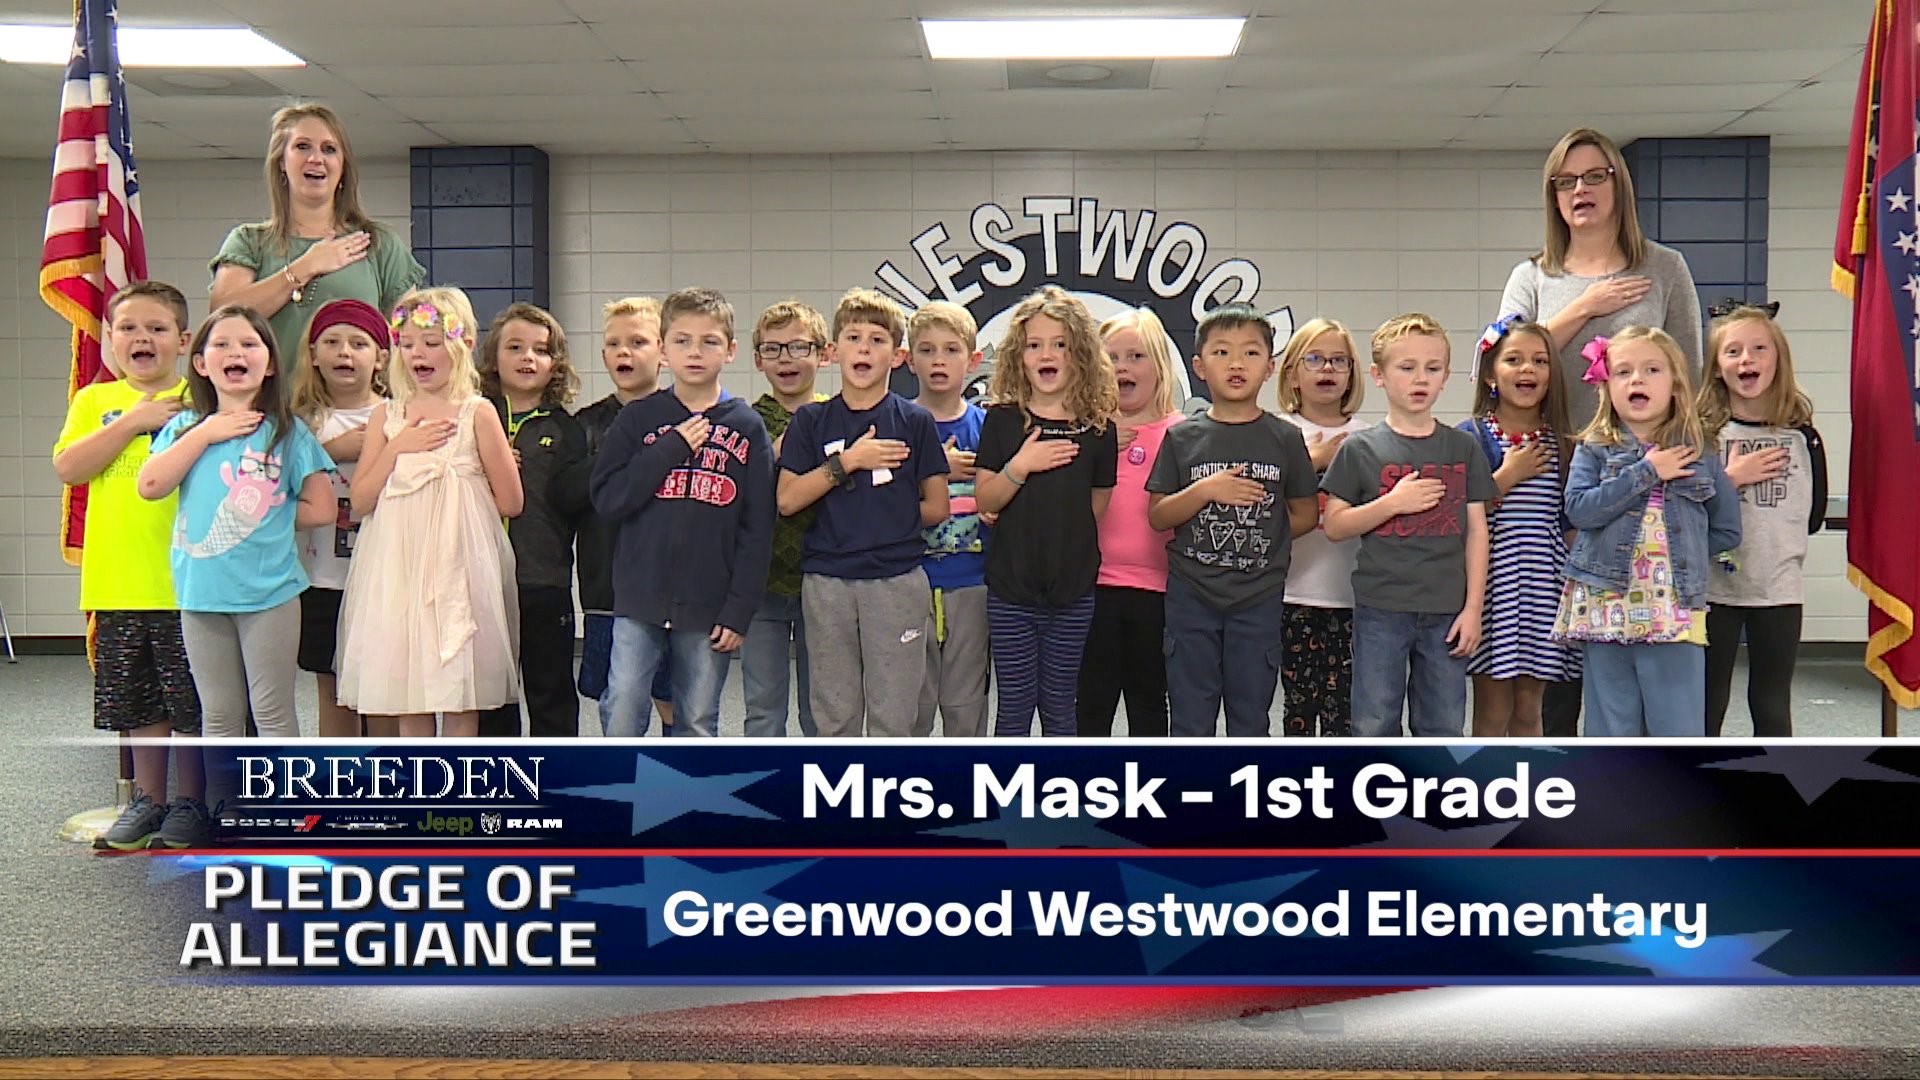 Mrs. Mask 1st Grade Greenwood Westwood Elementary